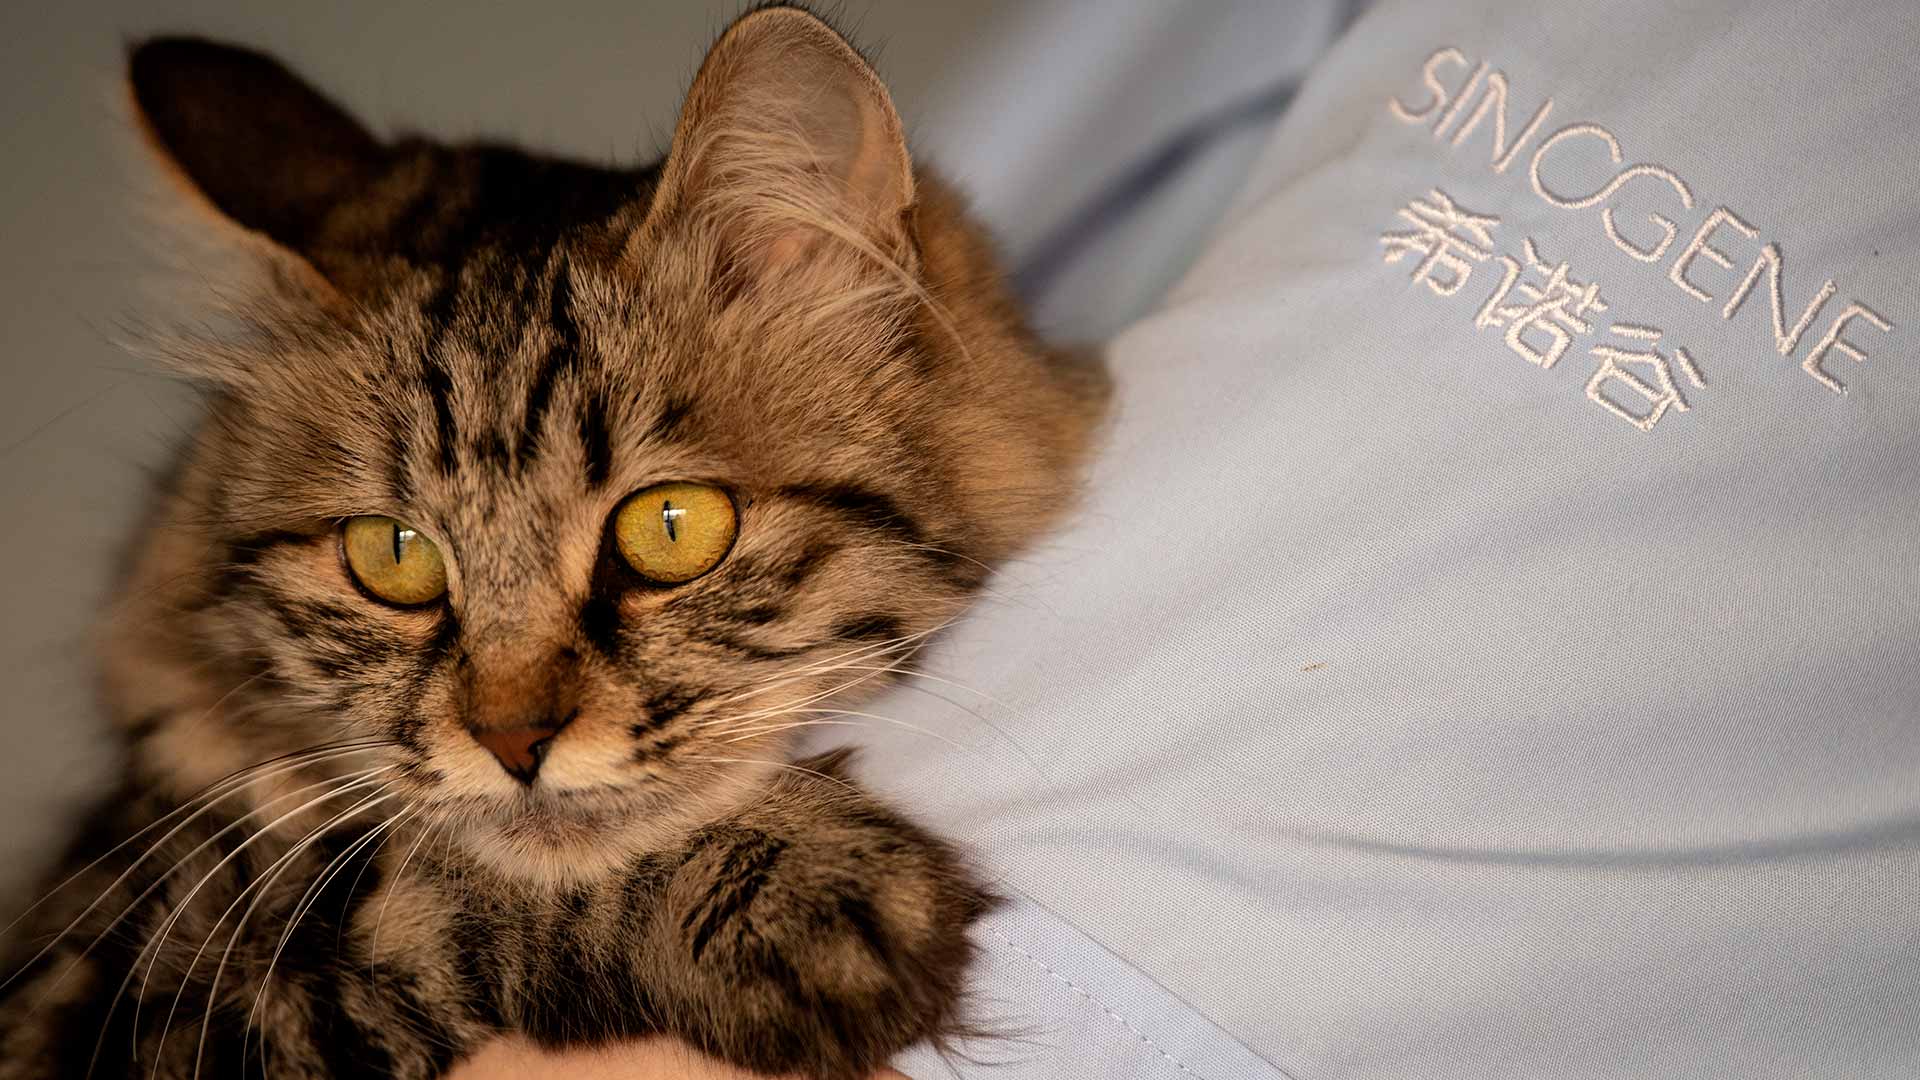 Garlic, el primer gato clonado en China